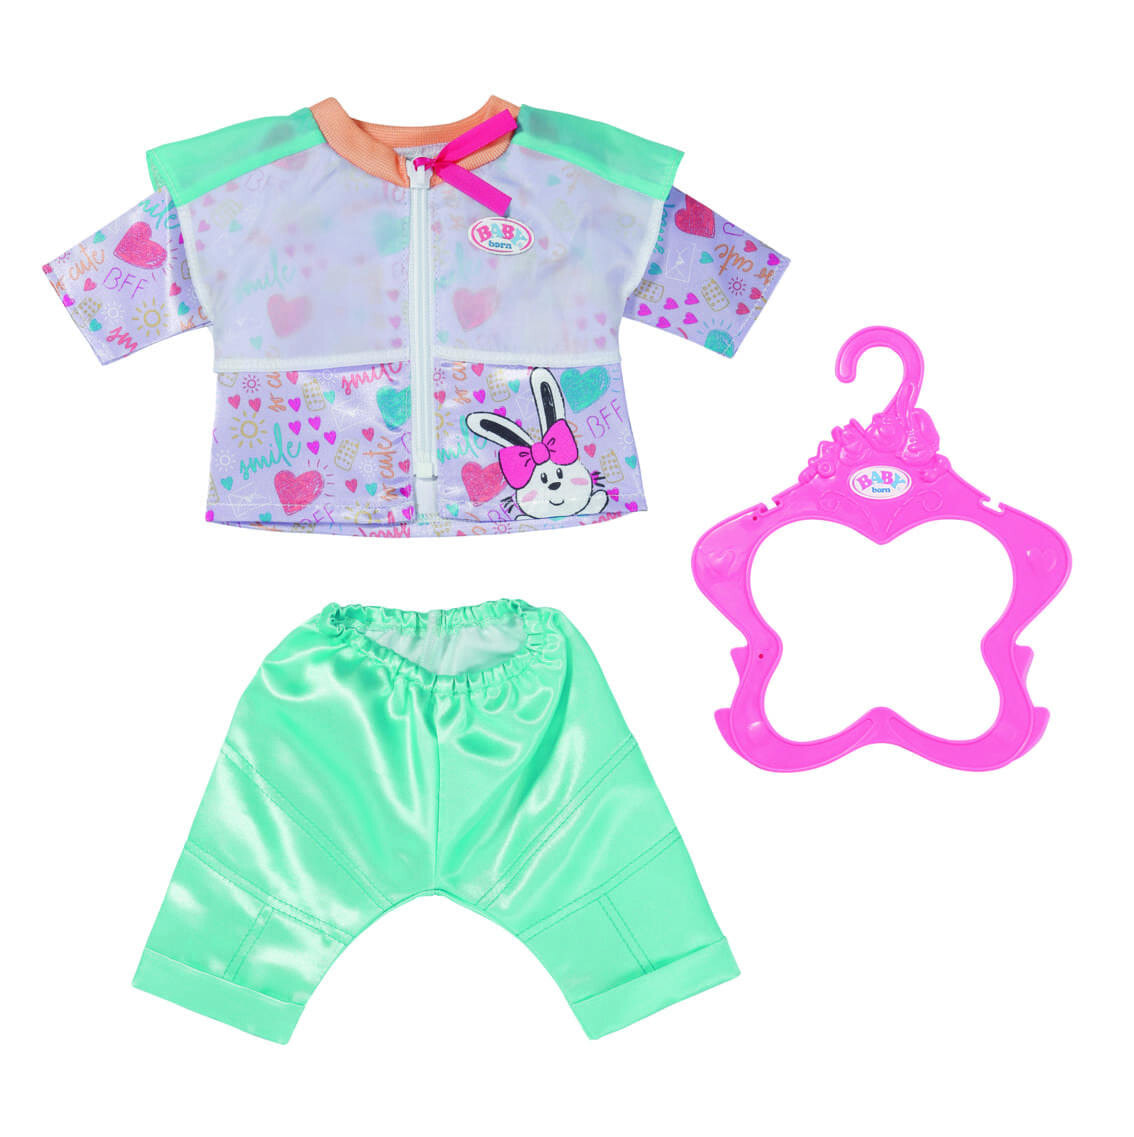 BABY born Casual Outfit Aqua Комплект одежды для куклы 832622